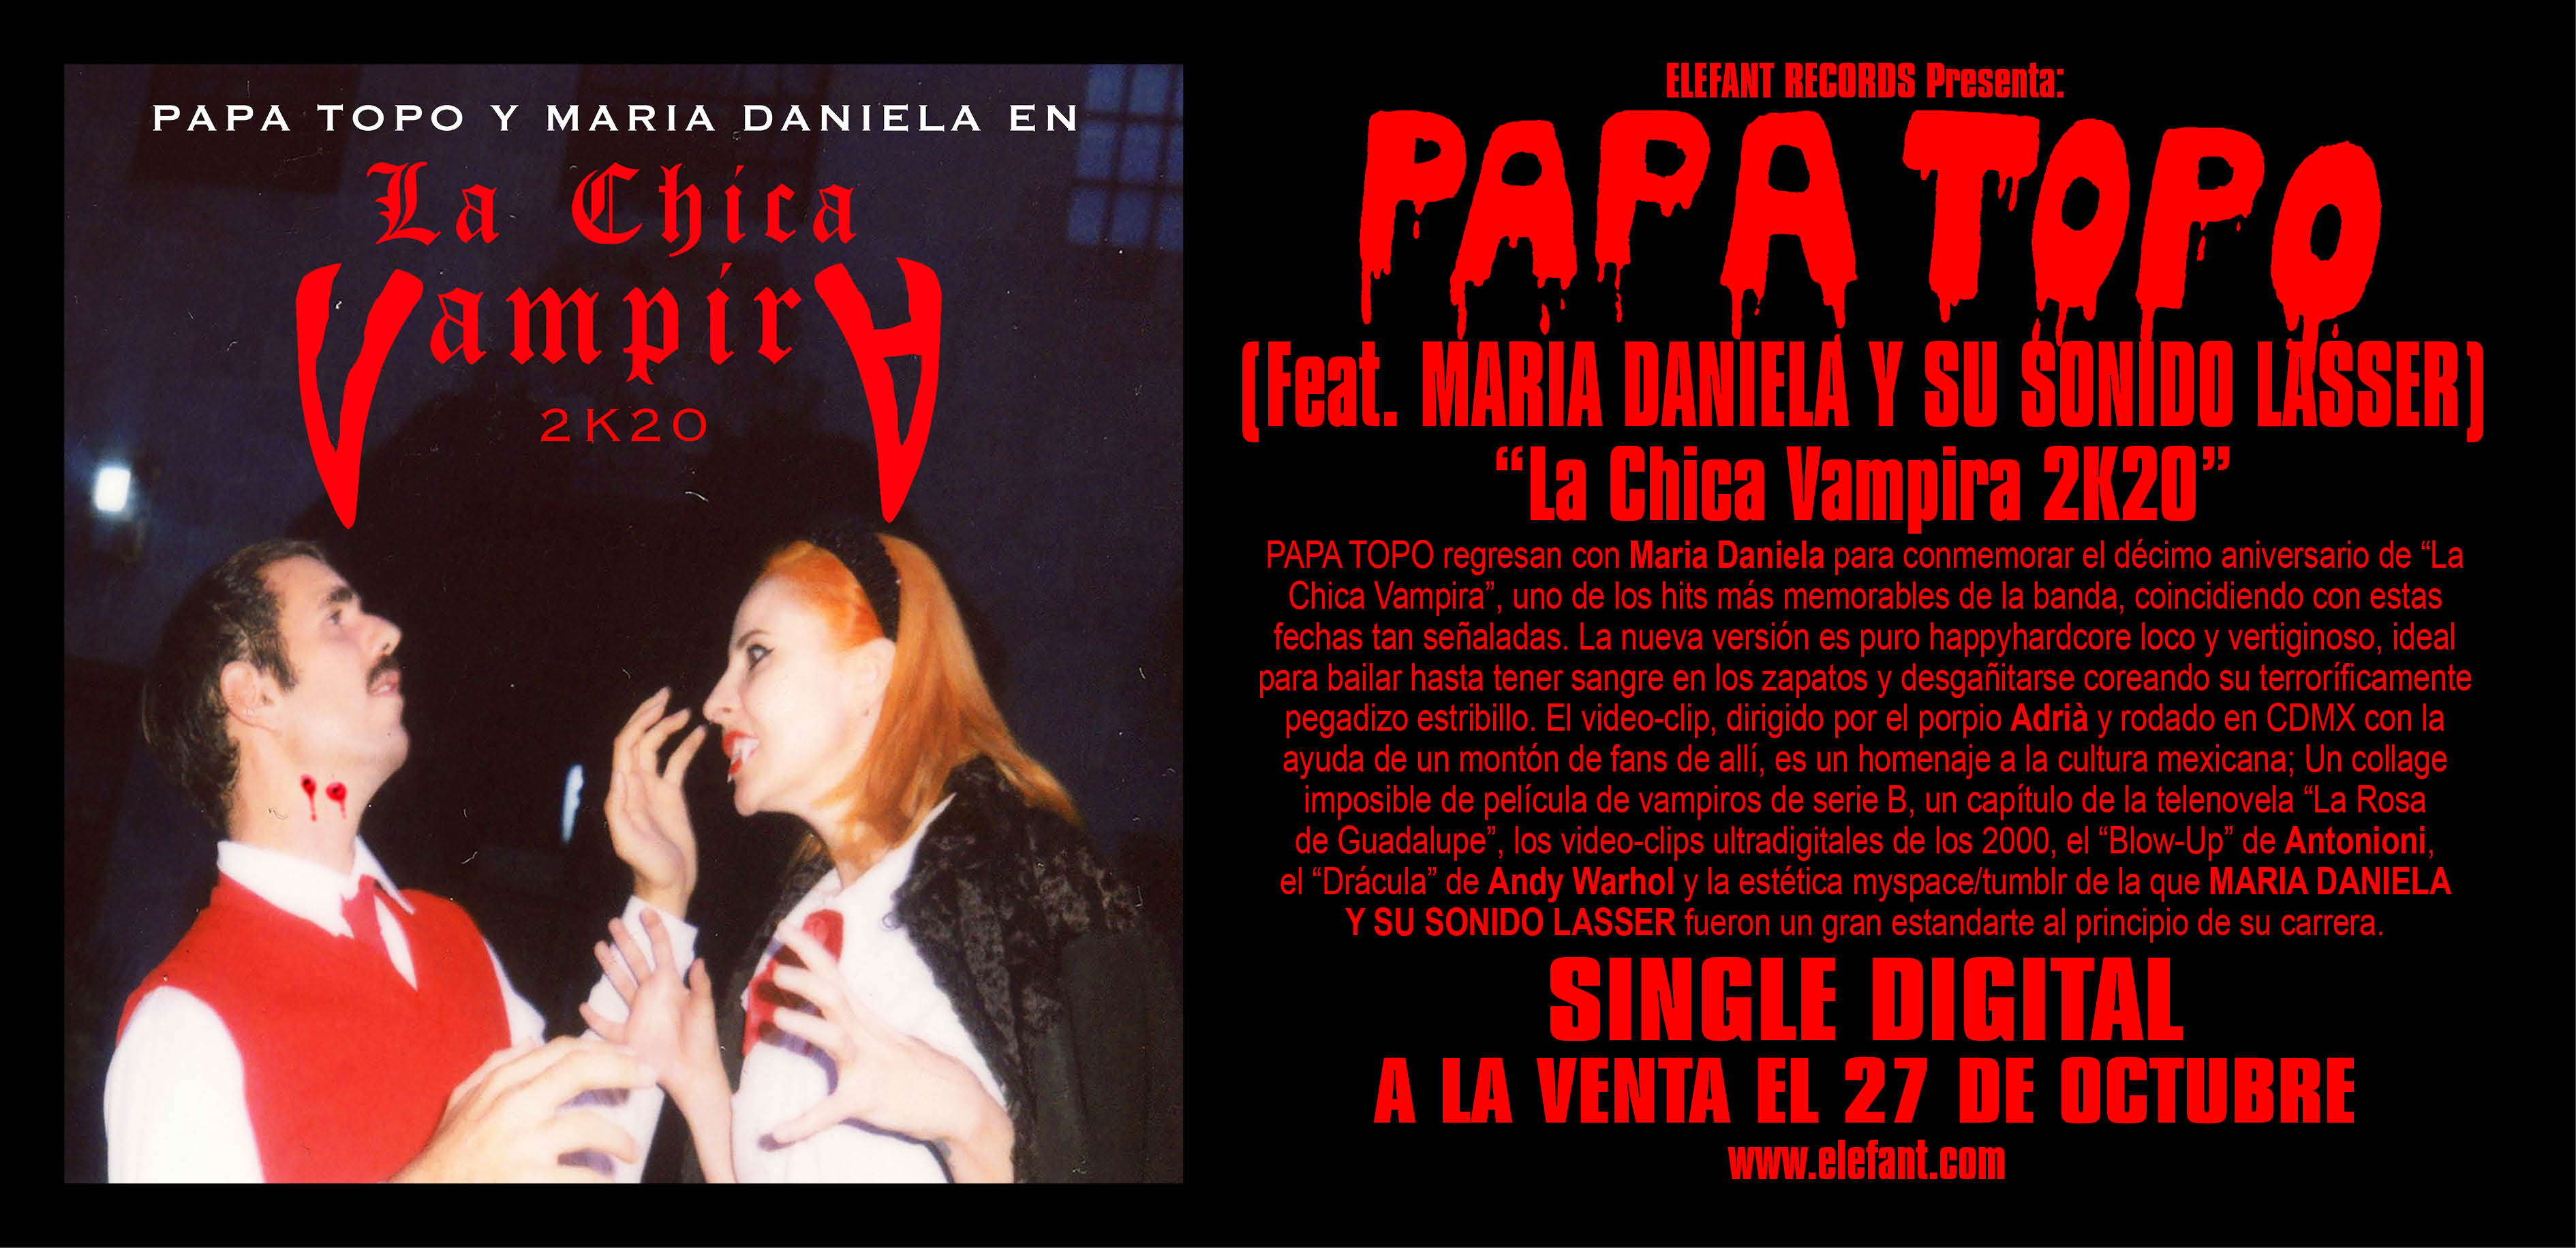 Papa Topo "La Chica Vampira 2k20 (Feat. María Daniela Y Su Sonido Láser)" Single Digital